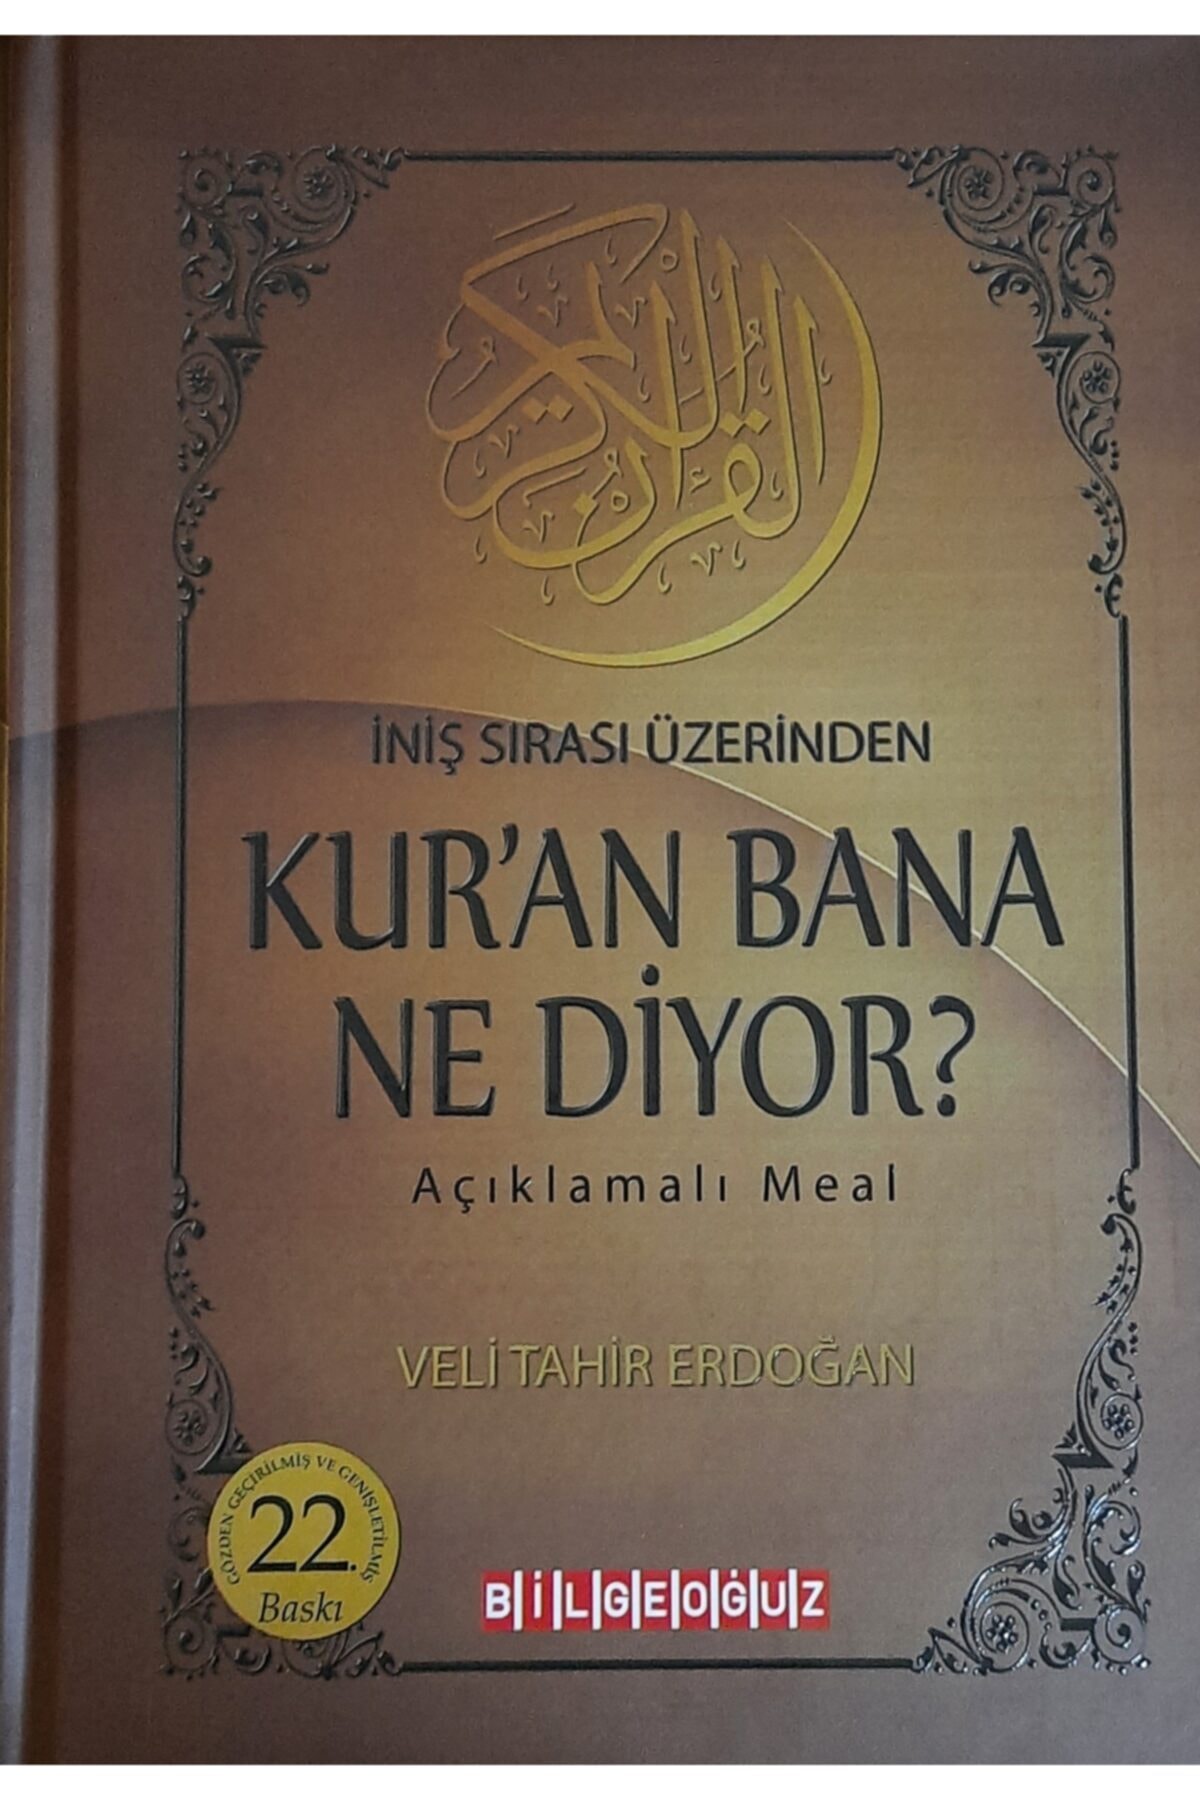 Kur'an Bana Ne Diyor? İniş Sırası Üzerinden - Veli Tahir Erdoğan